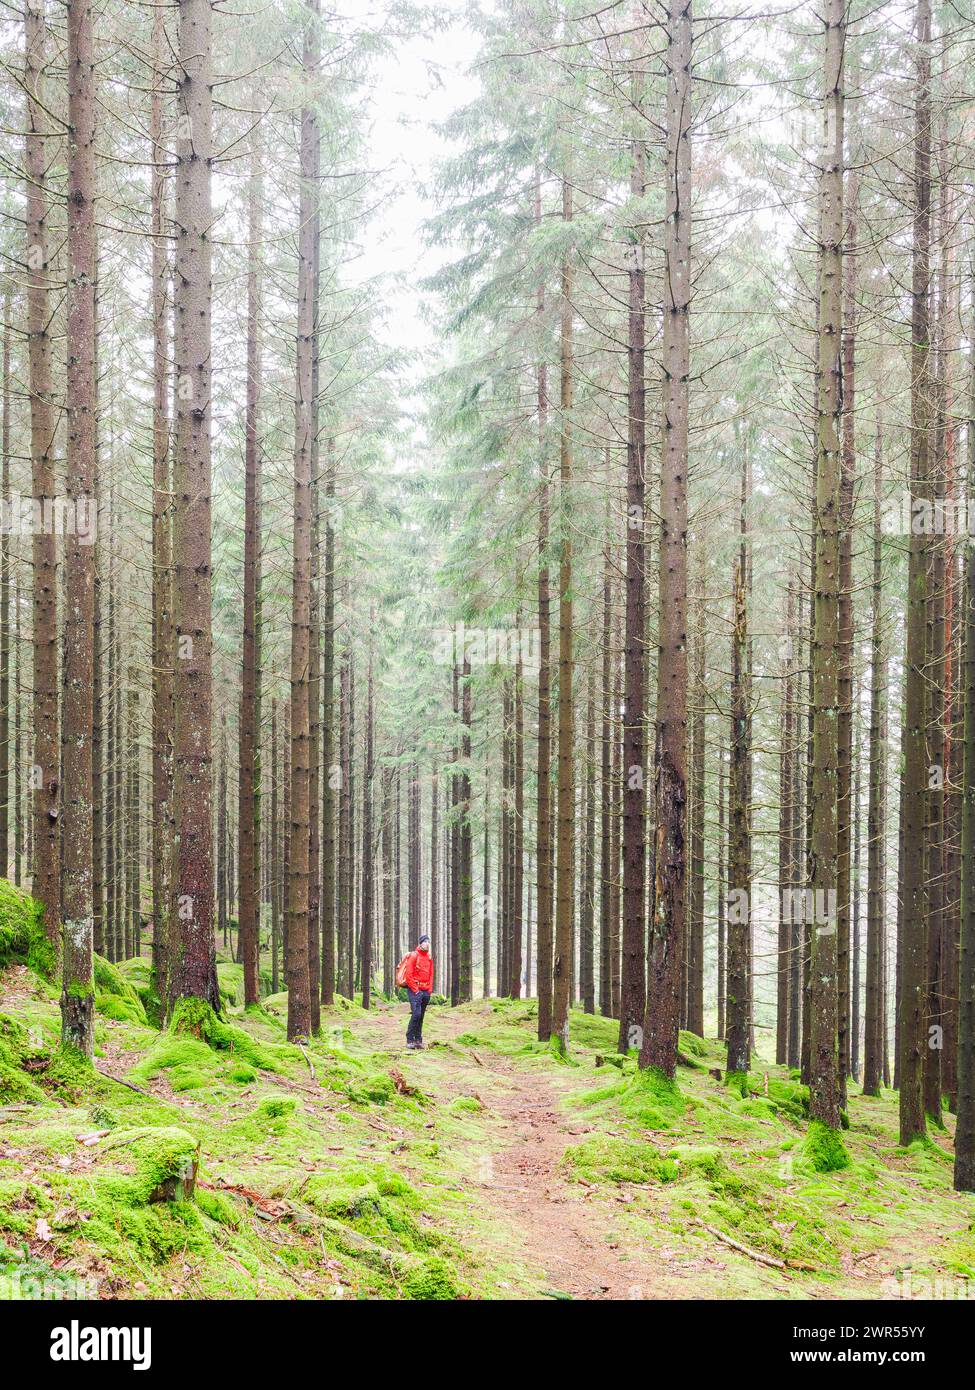 Ein einsamer Wanderer in einer leuchtenden roten Jacke wandert entlang eines schmalen Pfades durch den dichten Nadelwald Schwedens, umgeben von hohen Kiefern und dem f Stockfoto